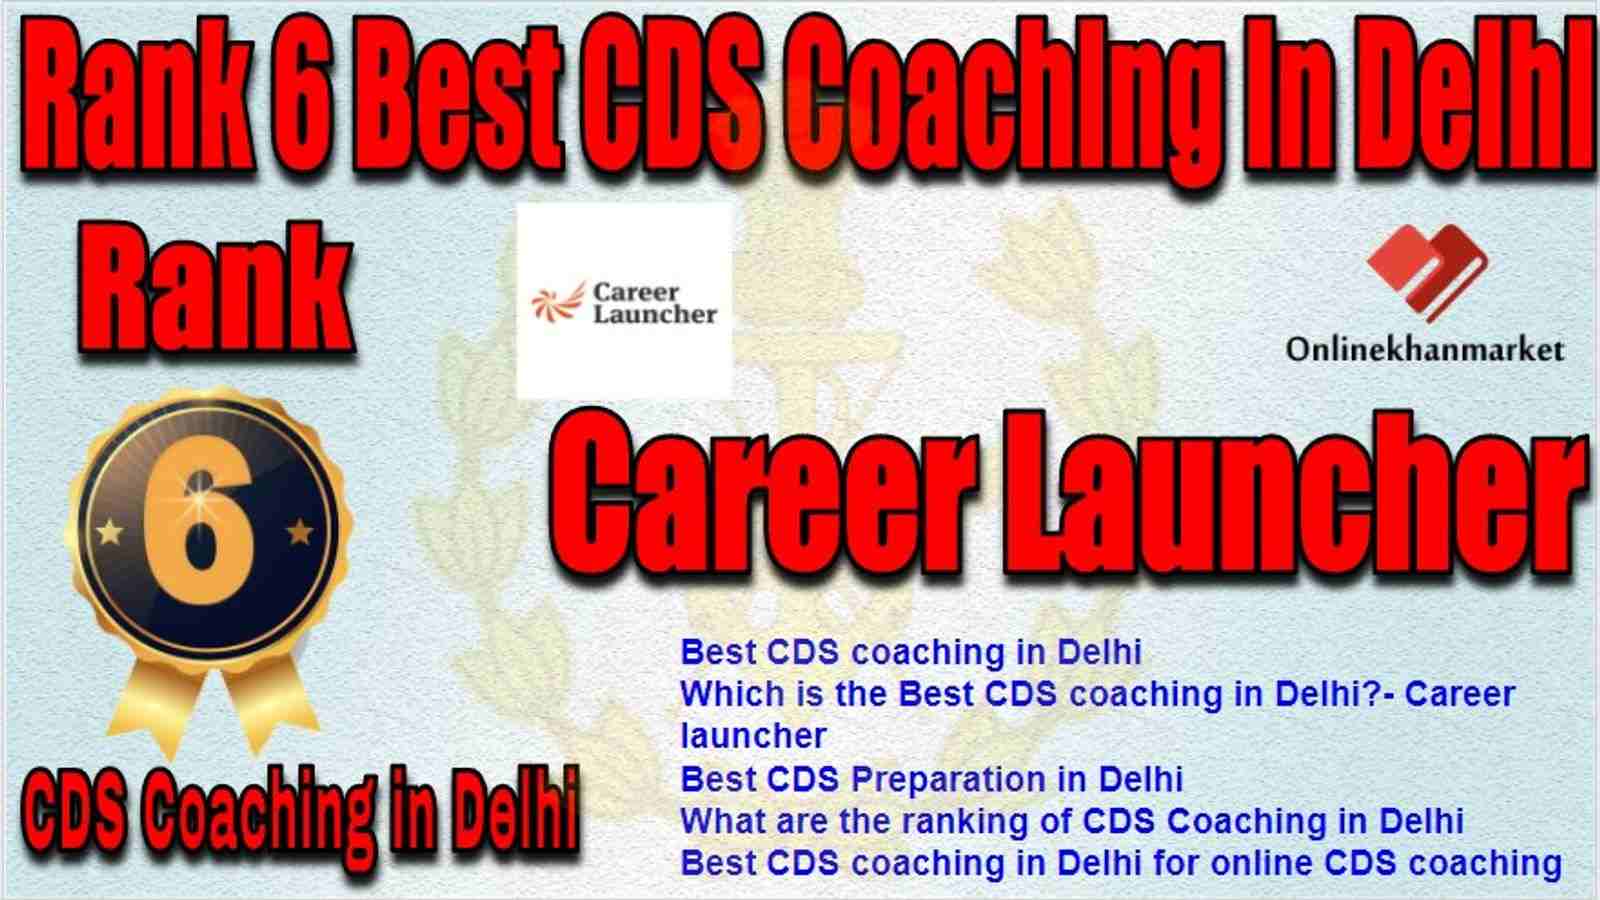 Rank 6 Best CDS Coaching in delhi